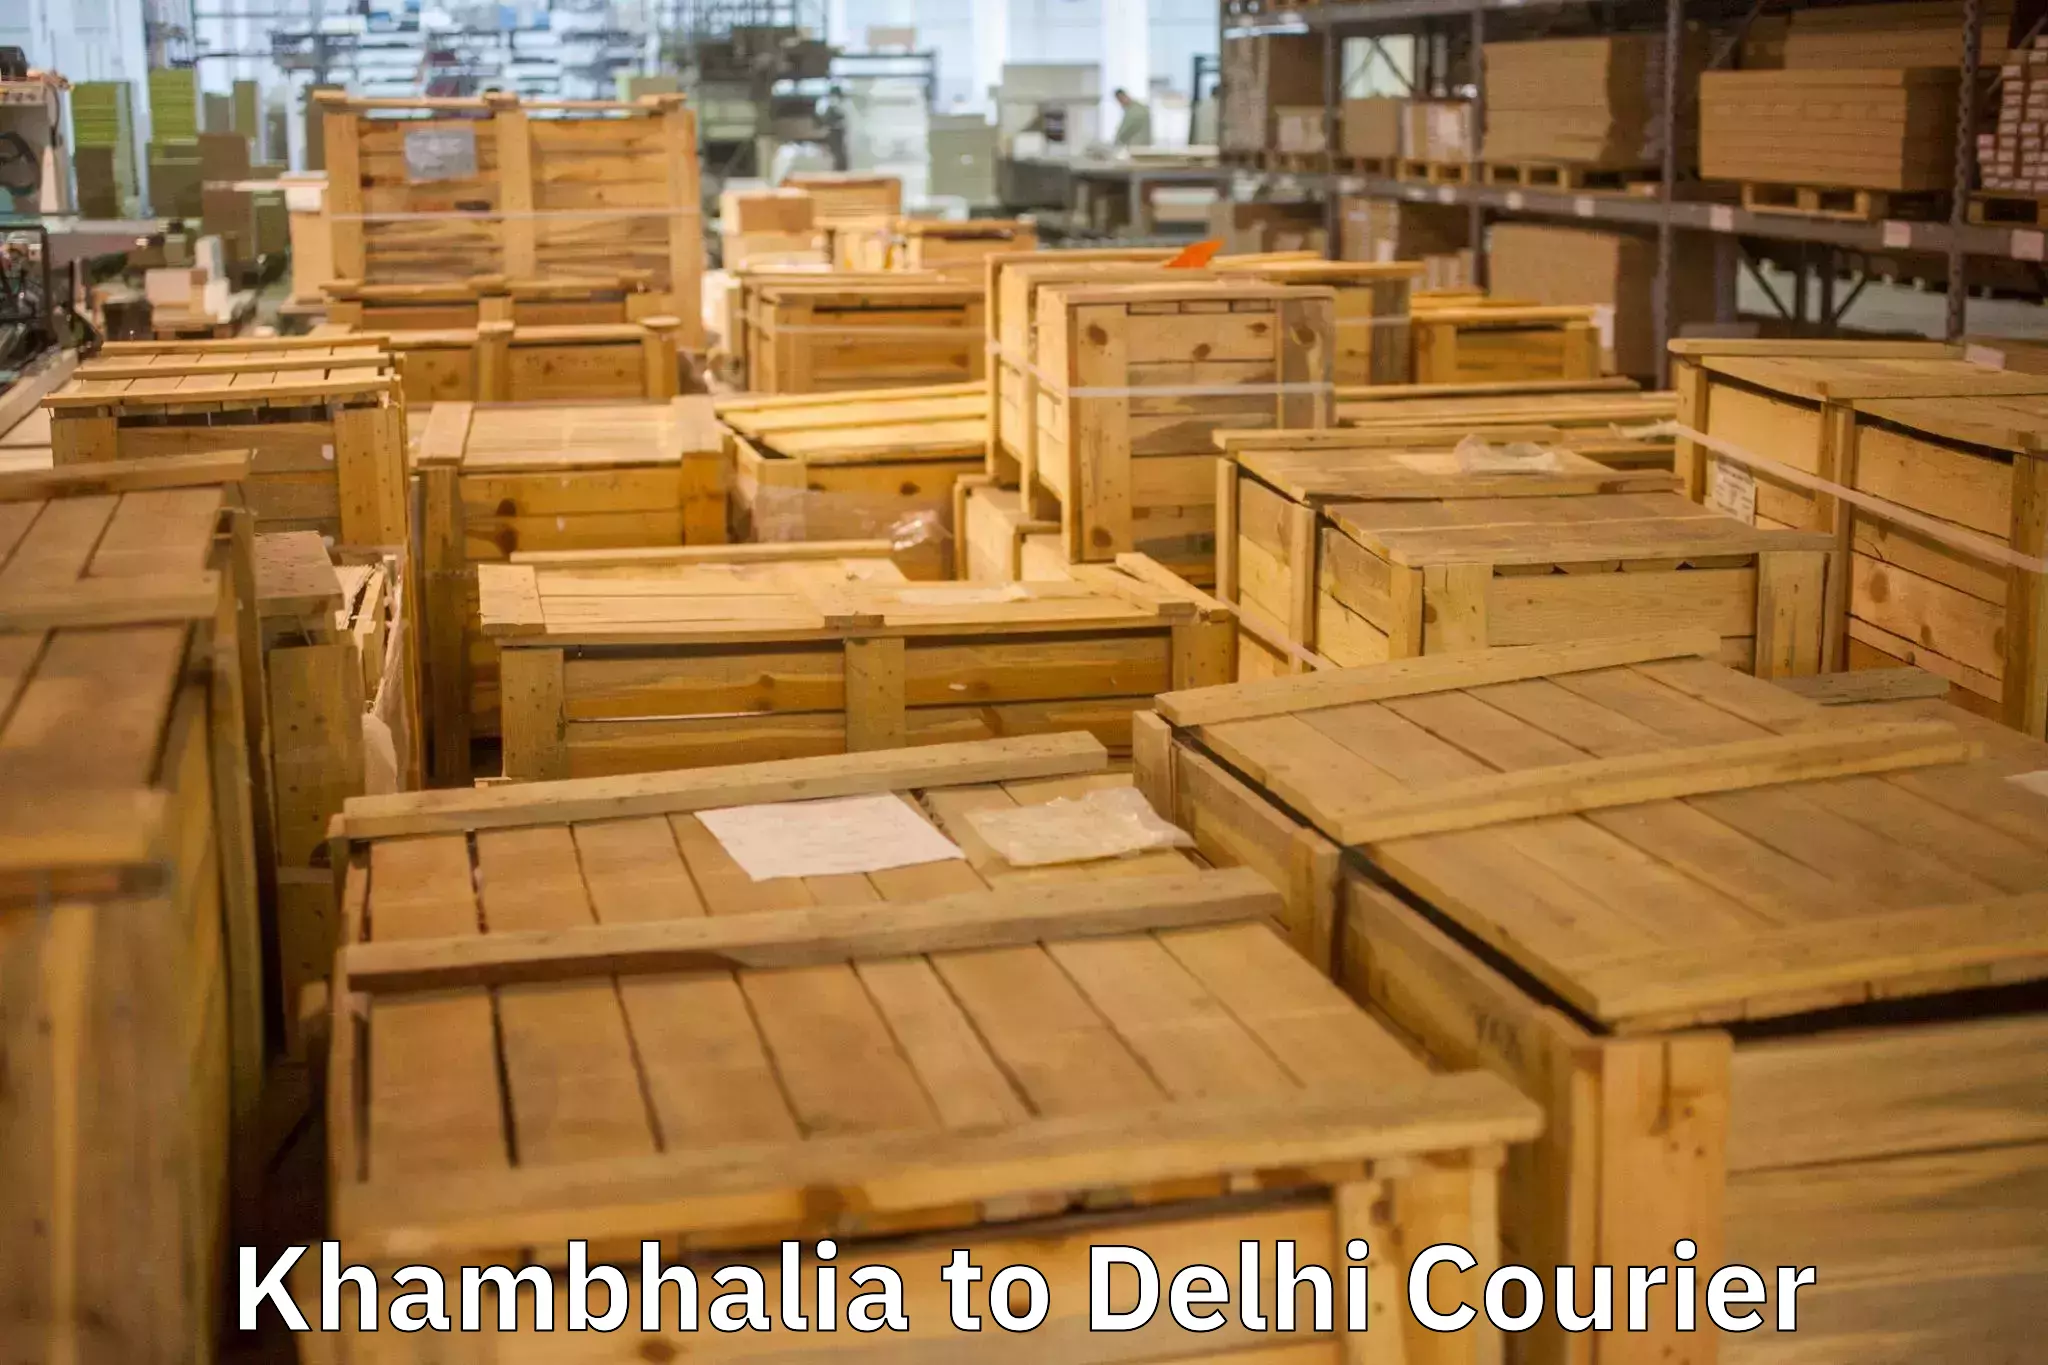 Quality moving and storage in Khambhalia to Sansad Marg